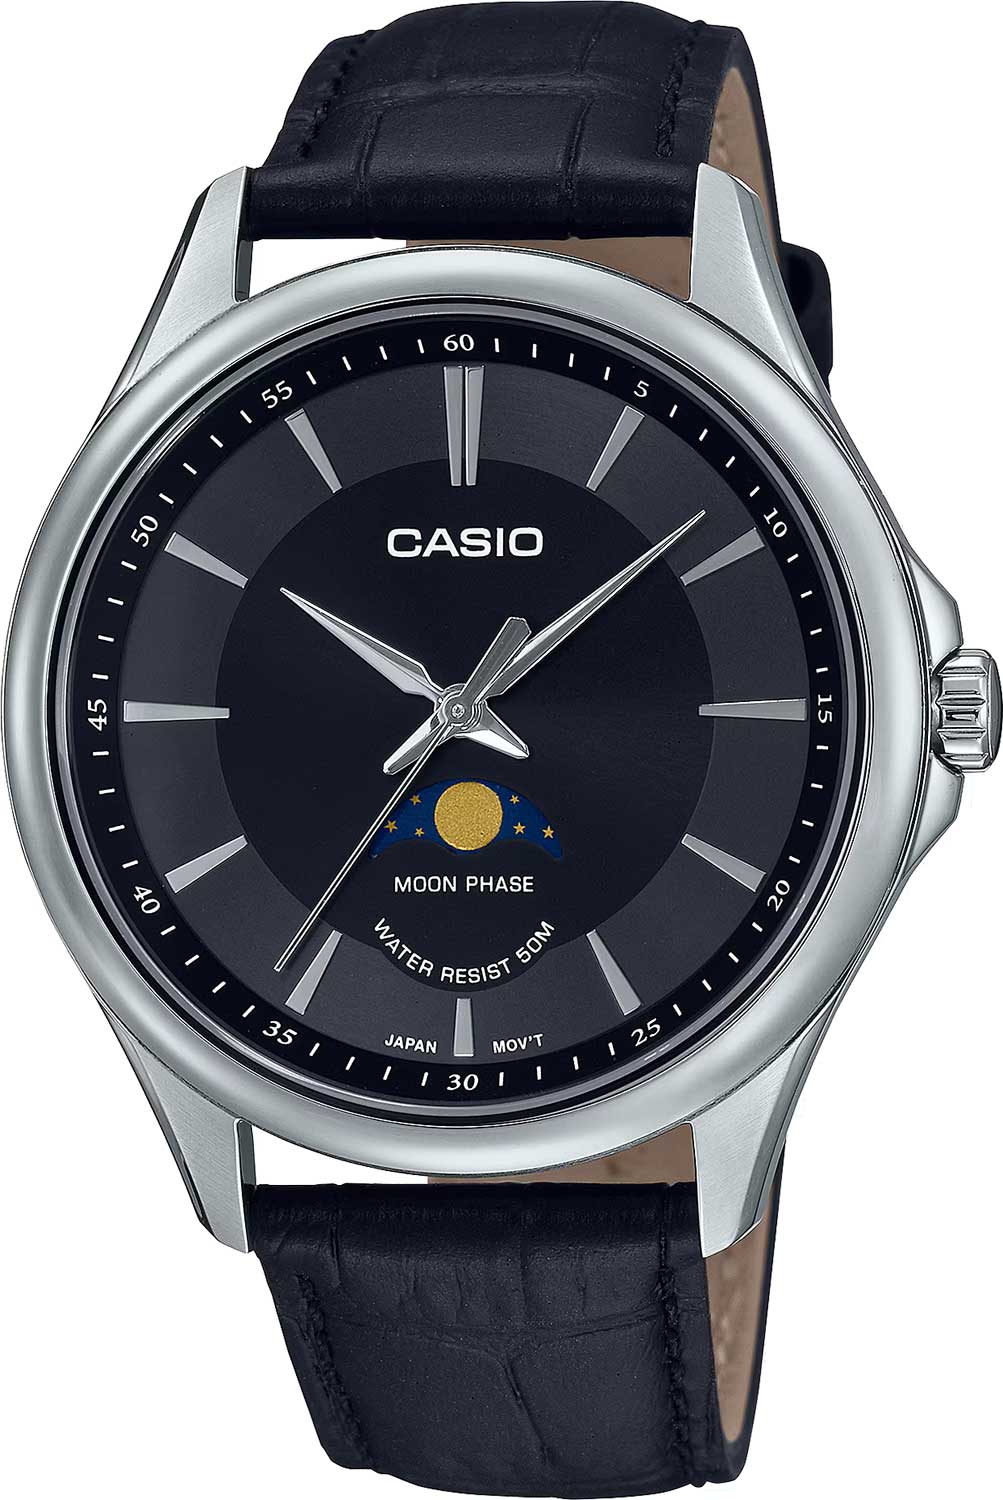    Casio Collection MTP-M100L-1A